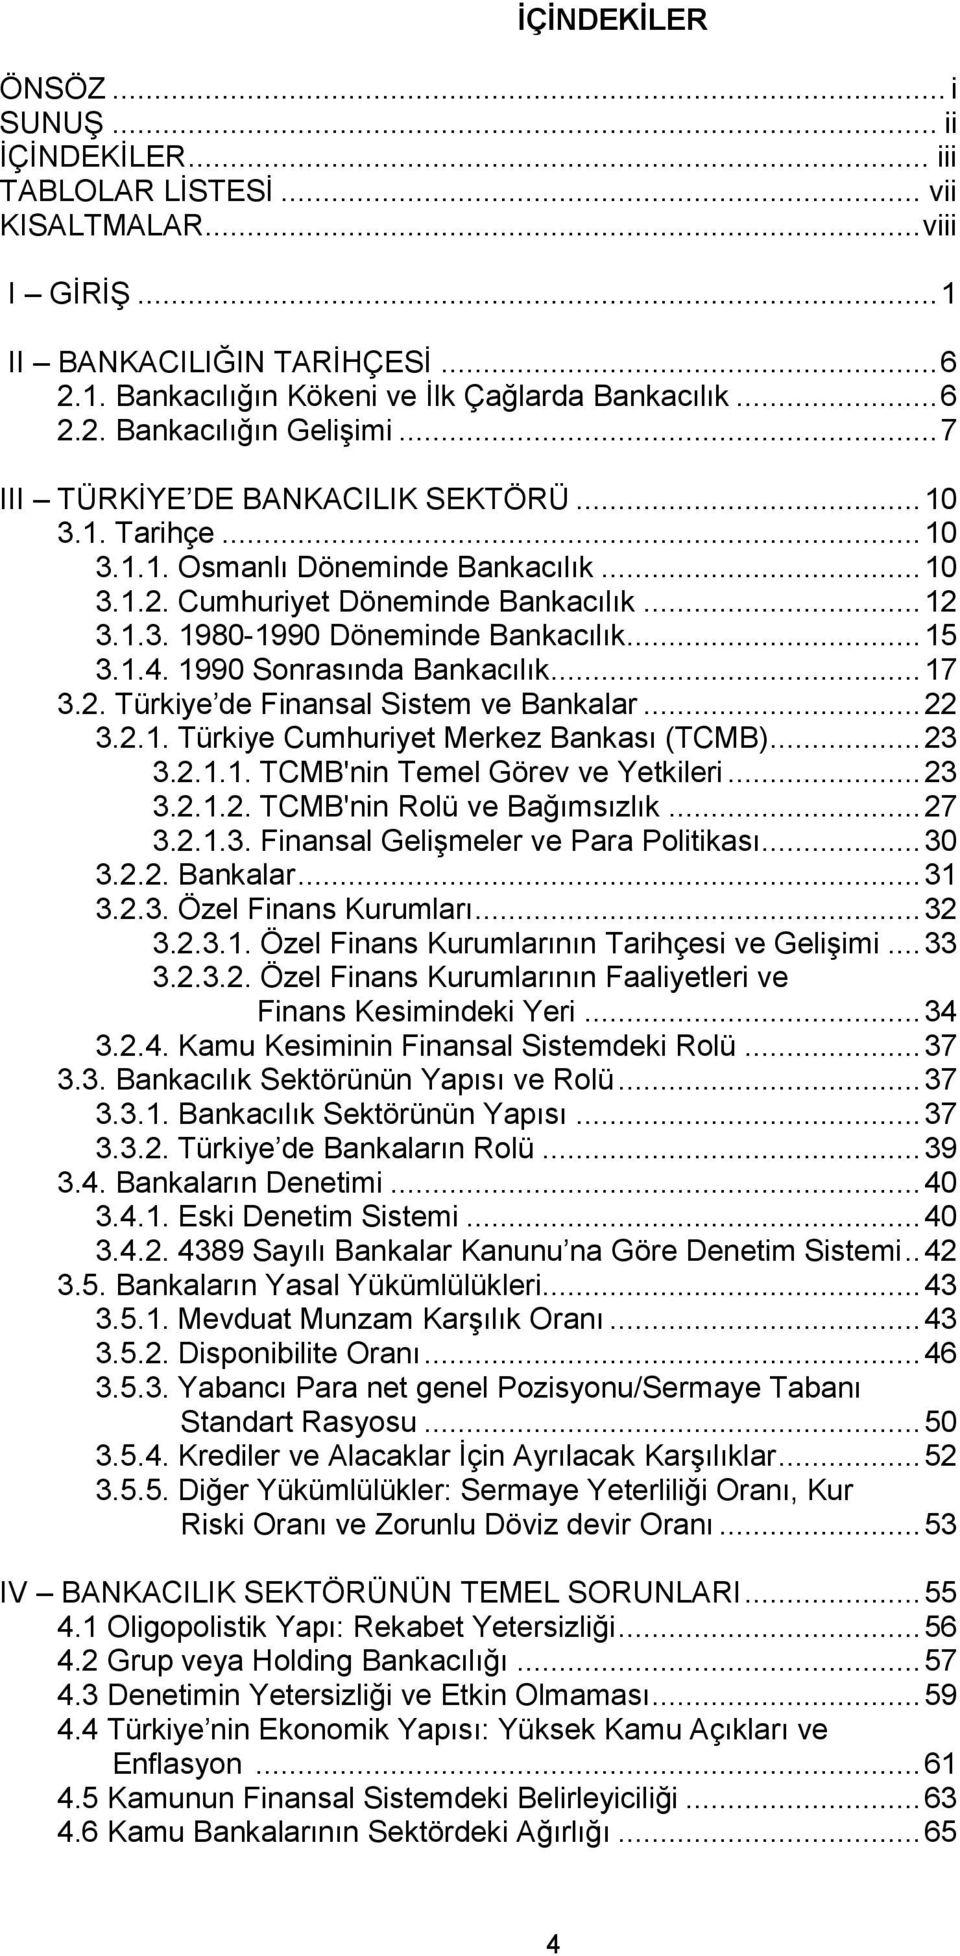 1990 Sonrasında Bankacılık... 17 3.2. Türkiye de Finansal Sistem ve Bankalar... 22 3.2.1. Türkiye Cumhuriyet Merkez Bankası (TCMB)... 23 3.2.1.1. TCMB'nin Temel Görev ve Yetkileri... 23 3.2.1.2. TCMB'nin Rolü ve Bağımsızlık.